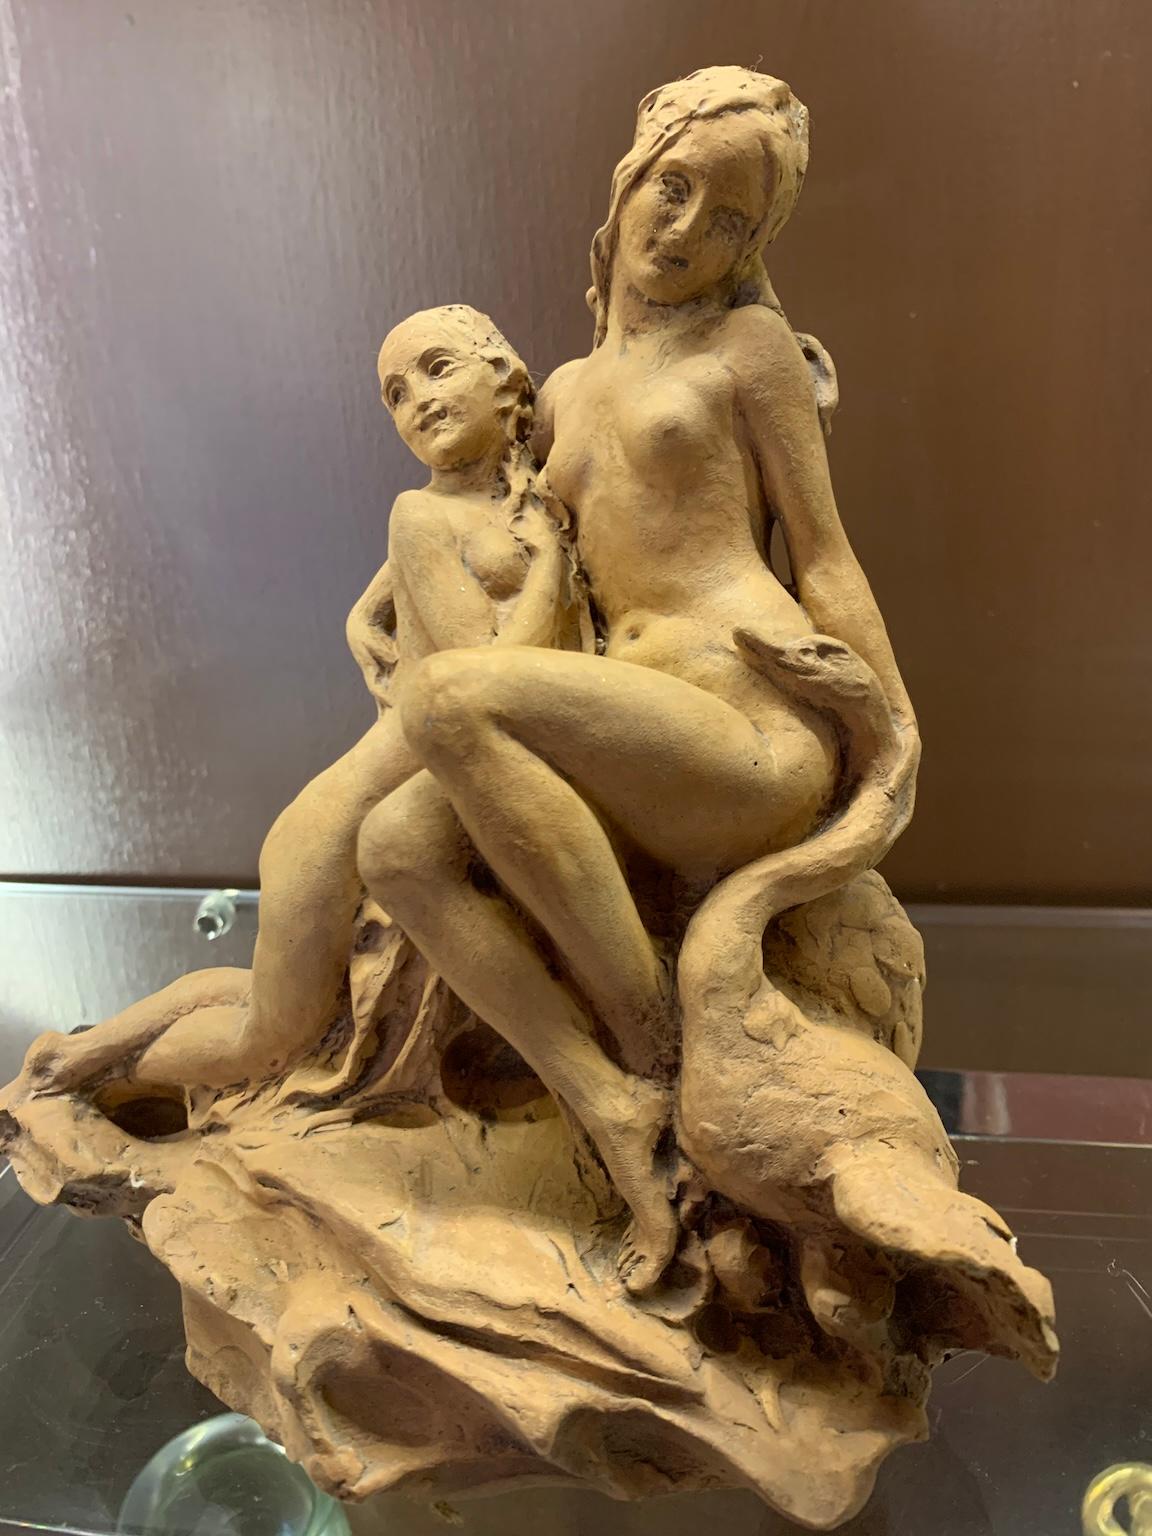 Terracotta figurativa italiana a tema mitologico dei primi del Novecento